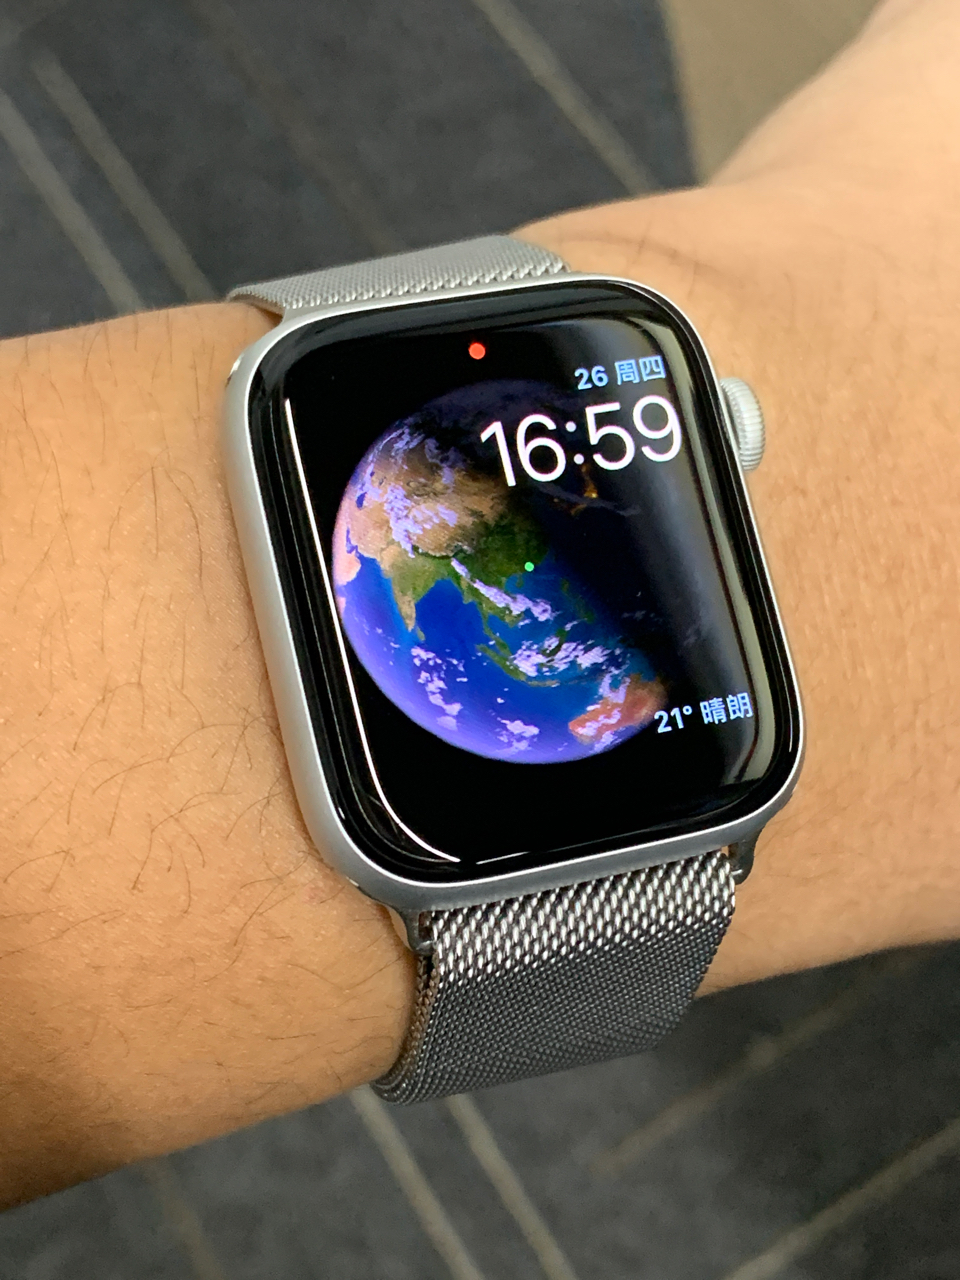 技术交流 苹果用户心心念念的实时地球壁纸 其实已经在apple Watch上实现了nga玩家社区